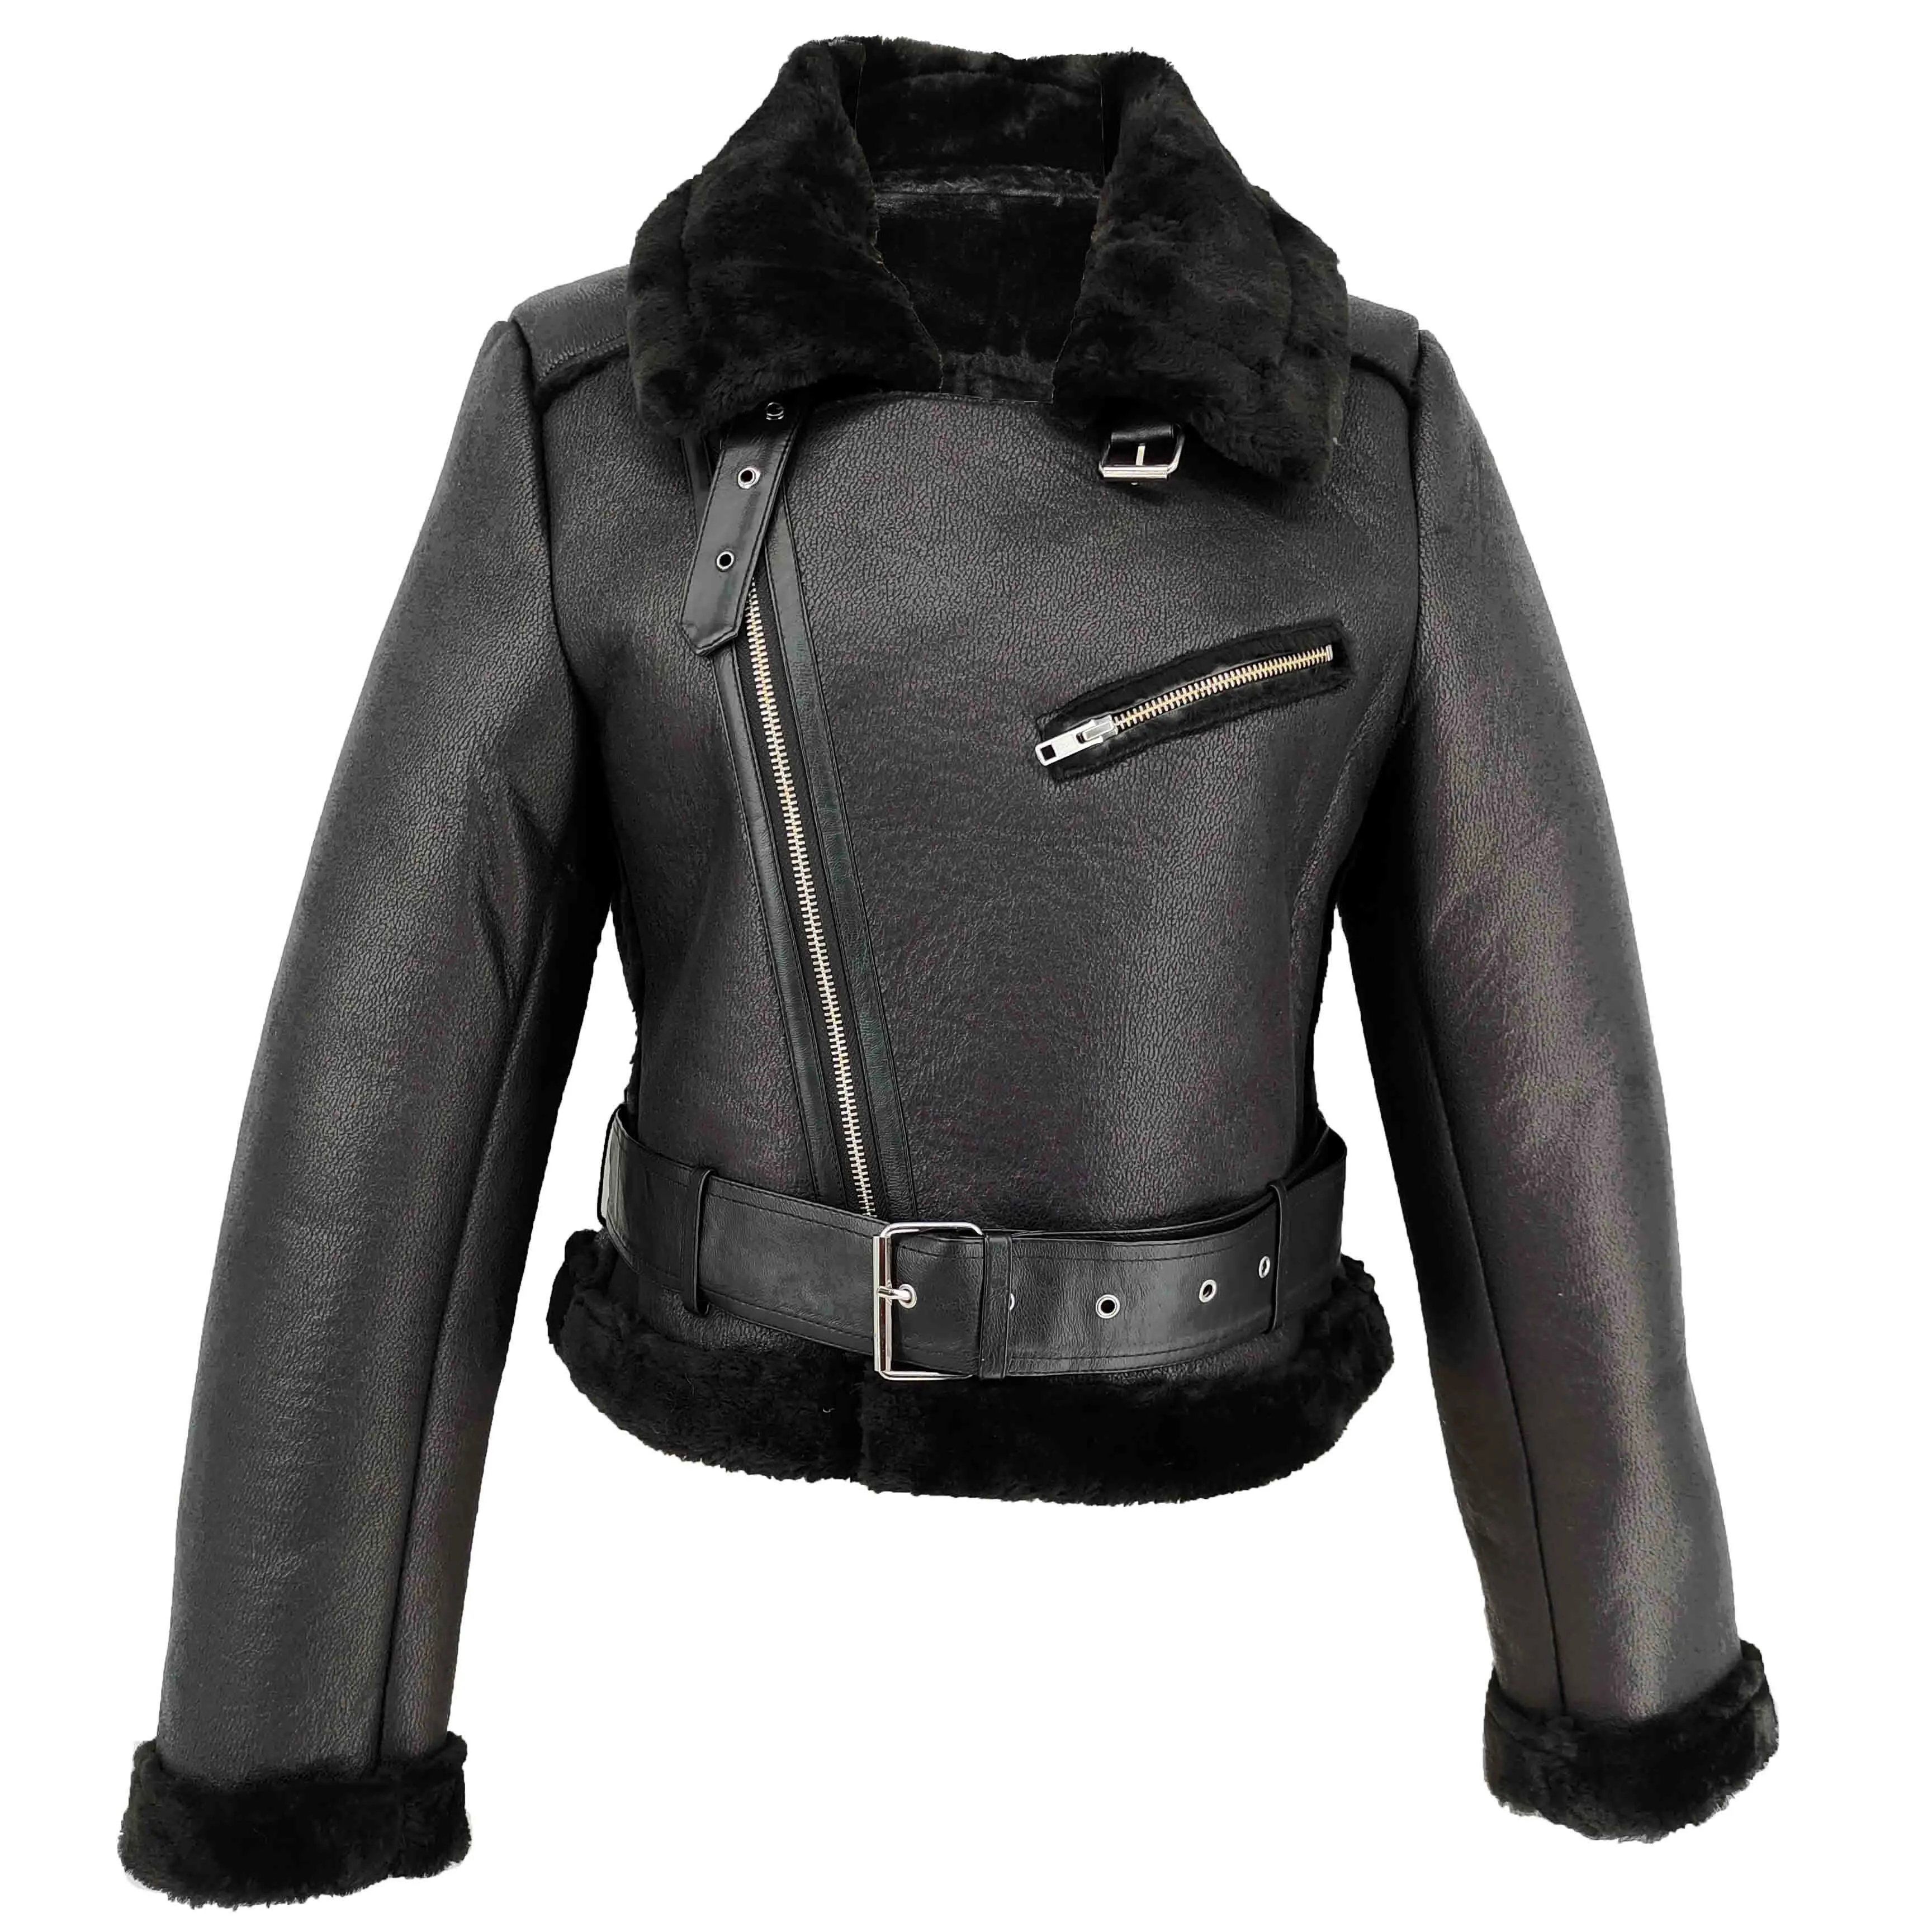 उच्च गुणवत्ता जिपर मोटा गरम देवियों माइक्रो साबर मुद्रित बंधुआ फर जैकेट सर्दियों महिलाओं कोट चमड़े का जैकेट